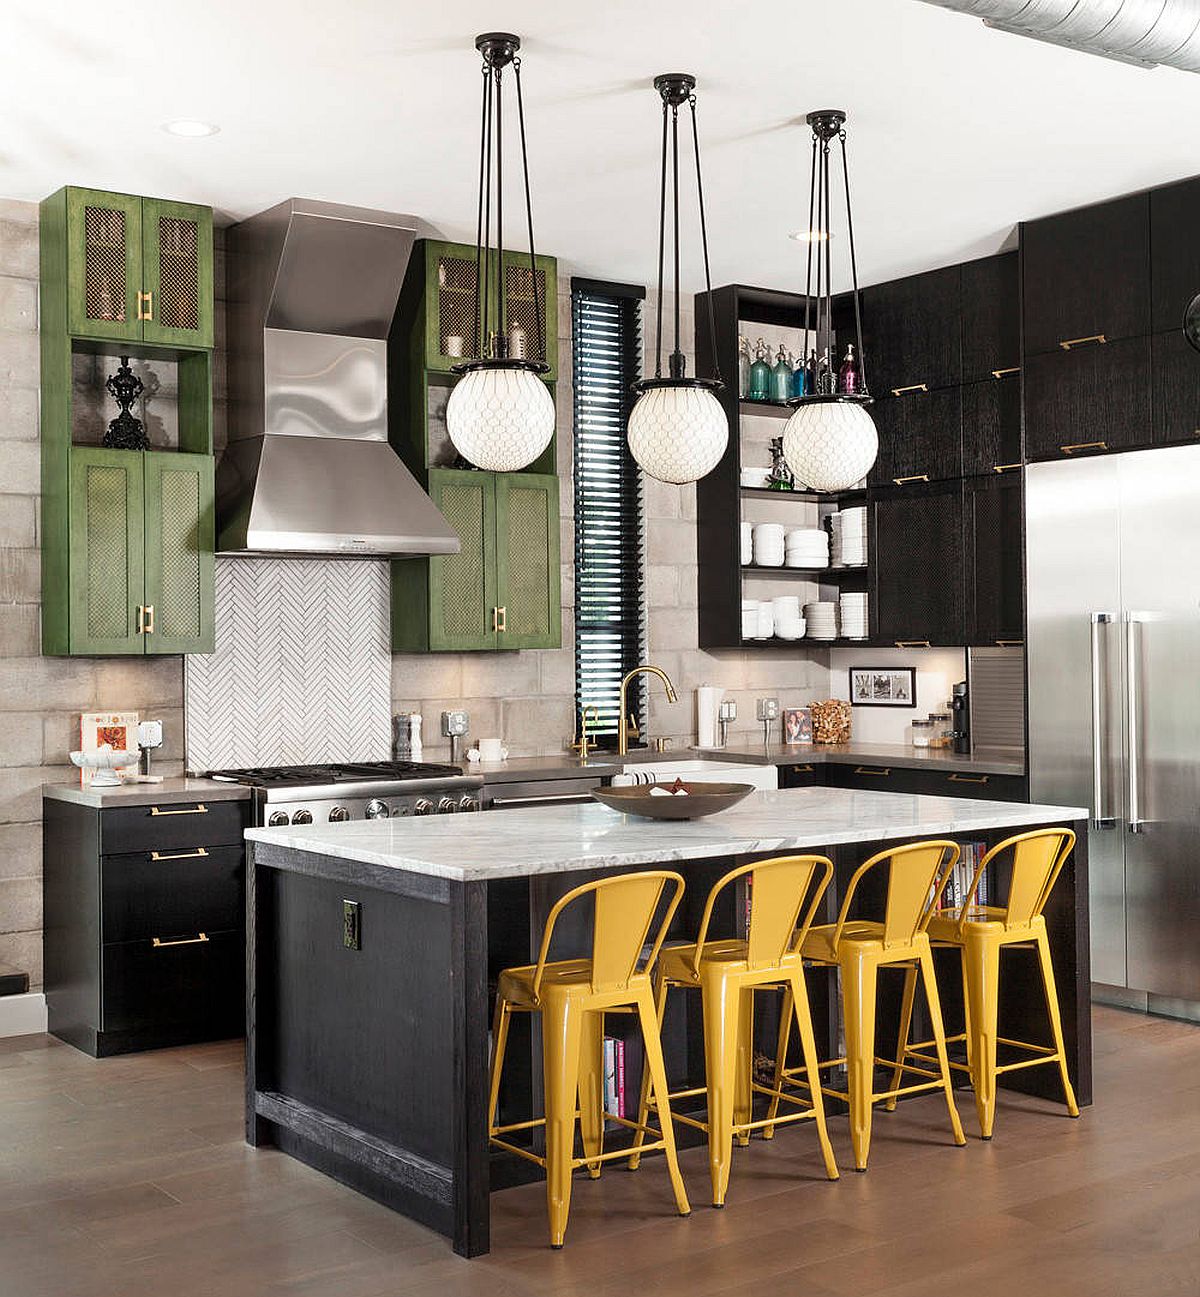 hình ảnh phòng bếp phong cách công nghiệp với điểm nhấn là bộ ghế bar màu vàng, tủ lưu trữ màu xanh lá cây